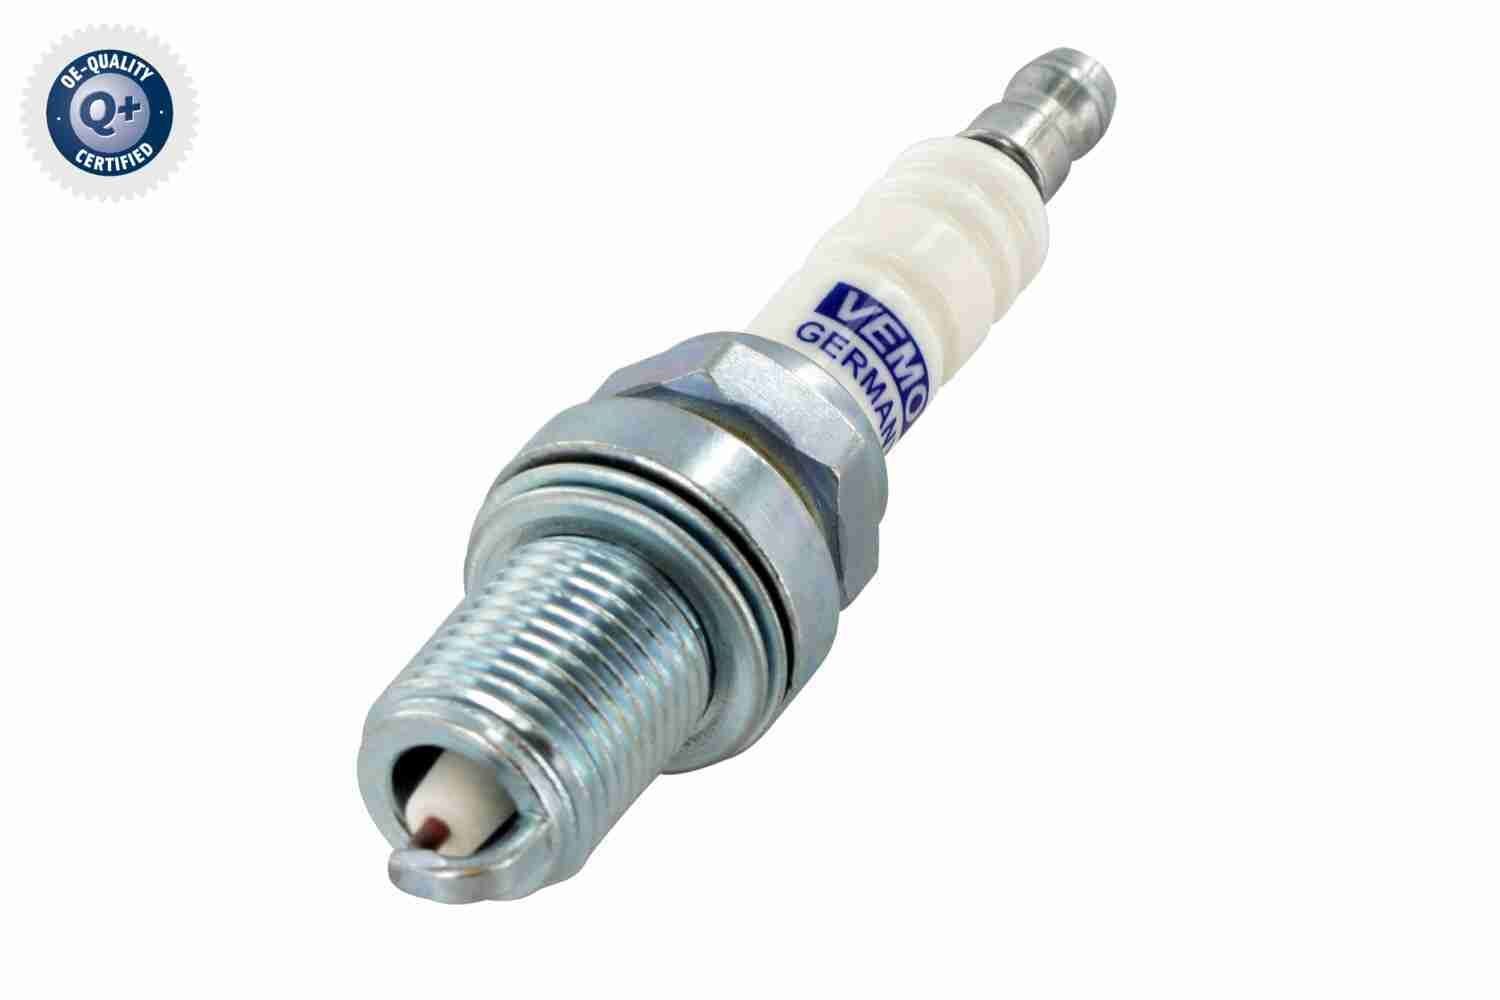 VEMO M 14 x 1,25, Spanner Size: 19, Q+, original equipment manufacturer quality Electrode distance: 0,7mm Engine spark plug V99-75-1023 buy